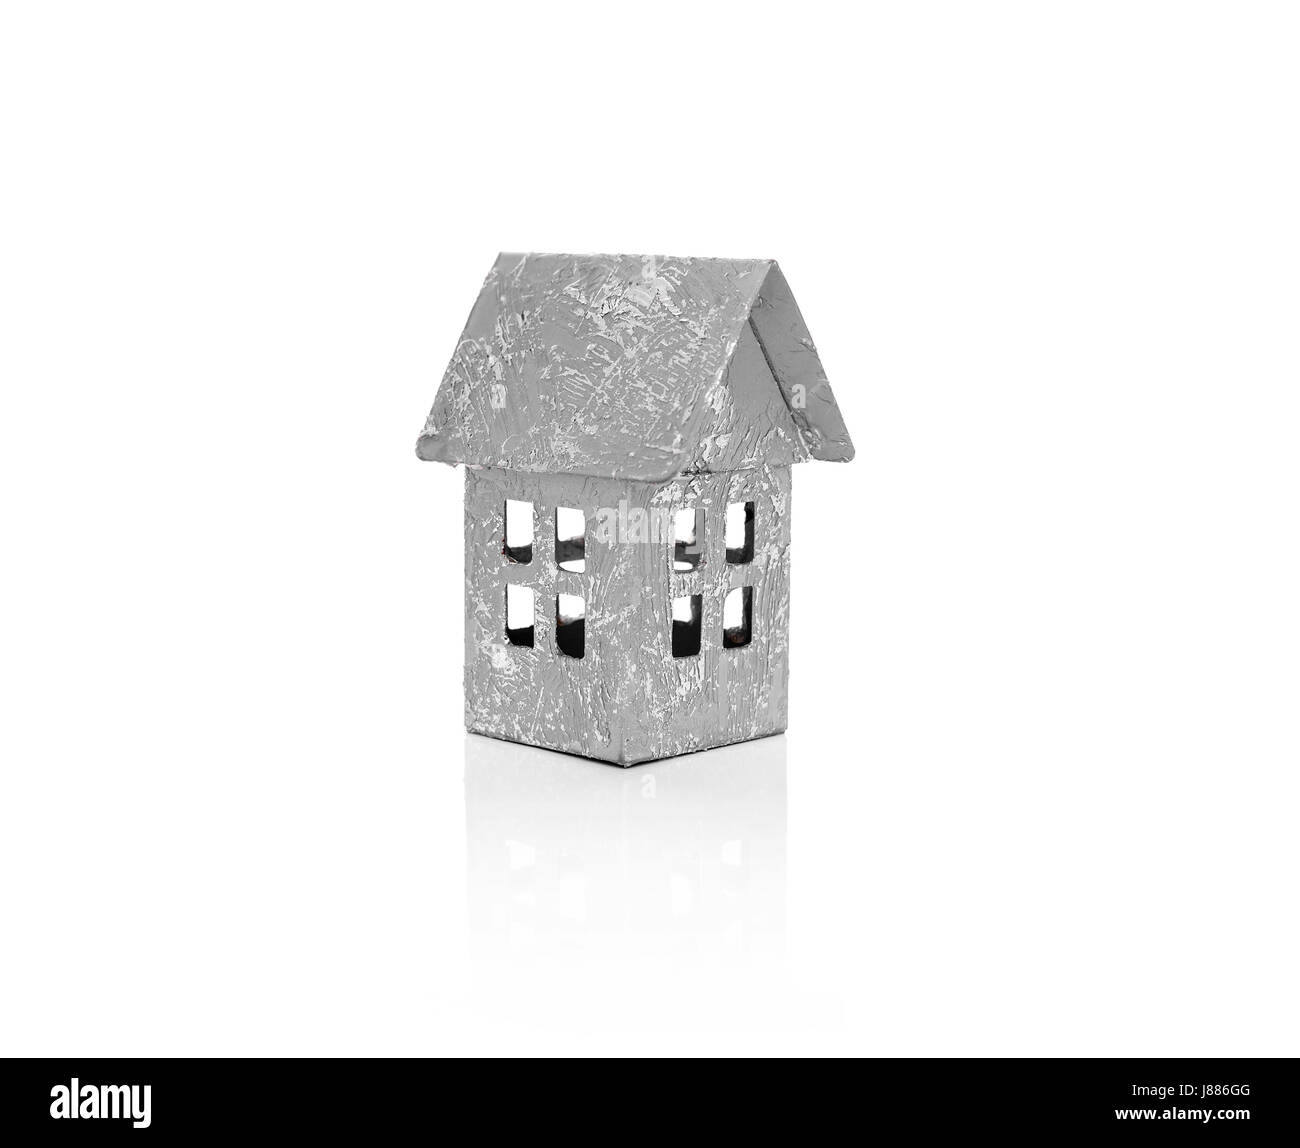 Modèle d'une petite maison. Isolé sur fond blanc. Banque D'Images